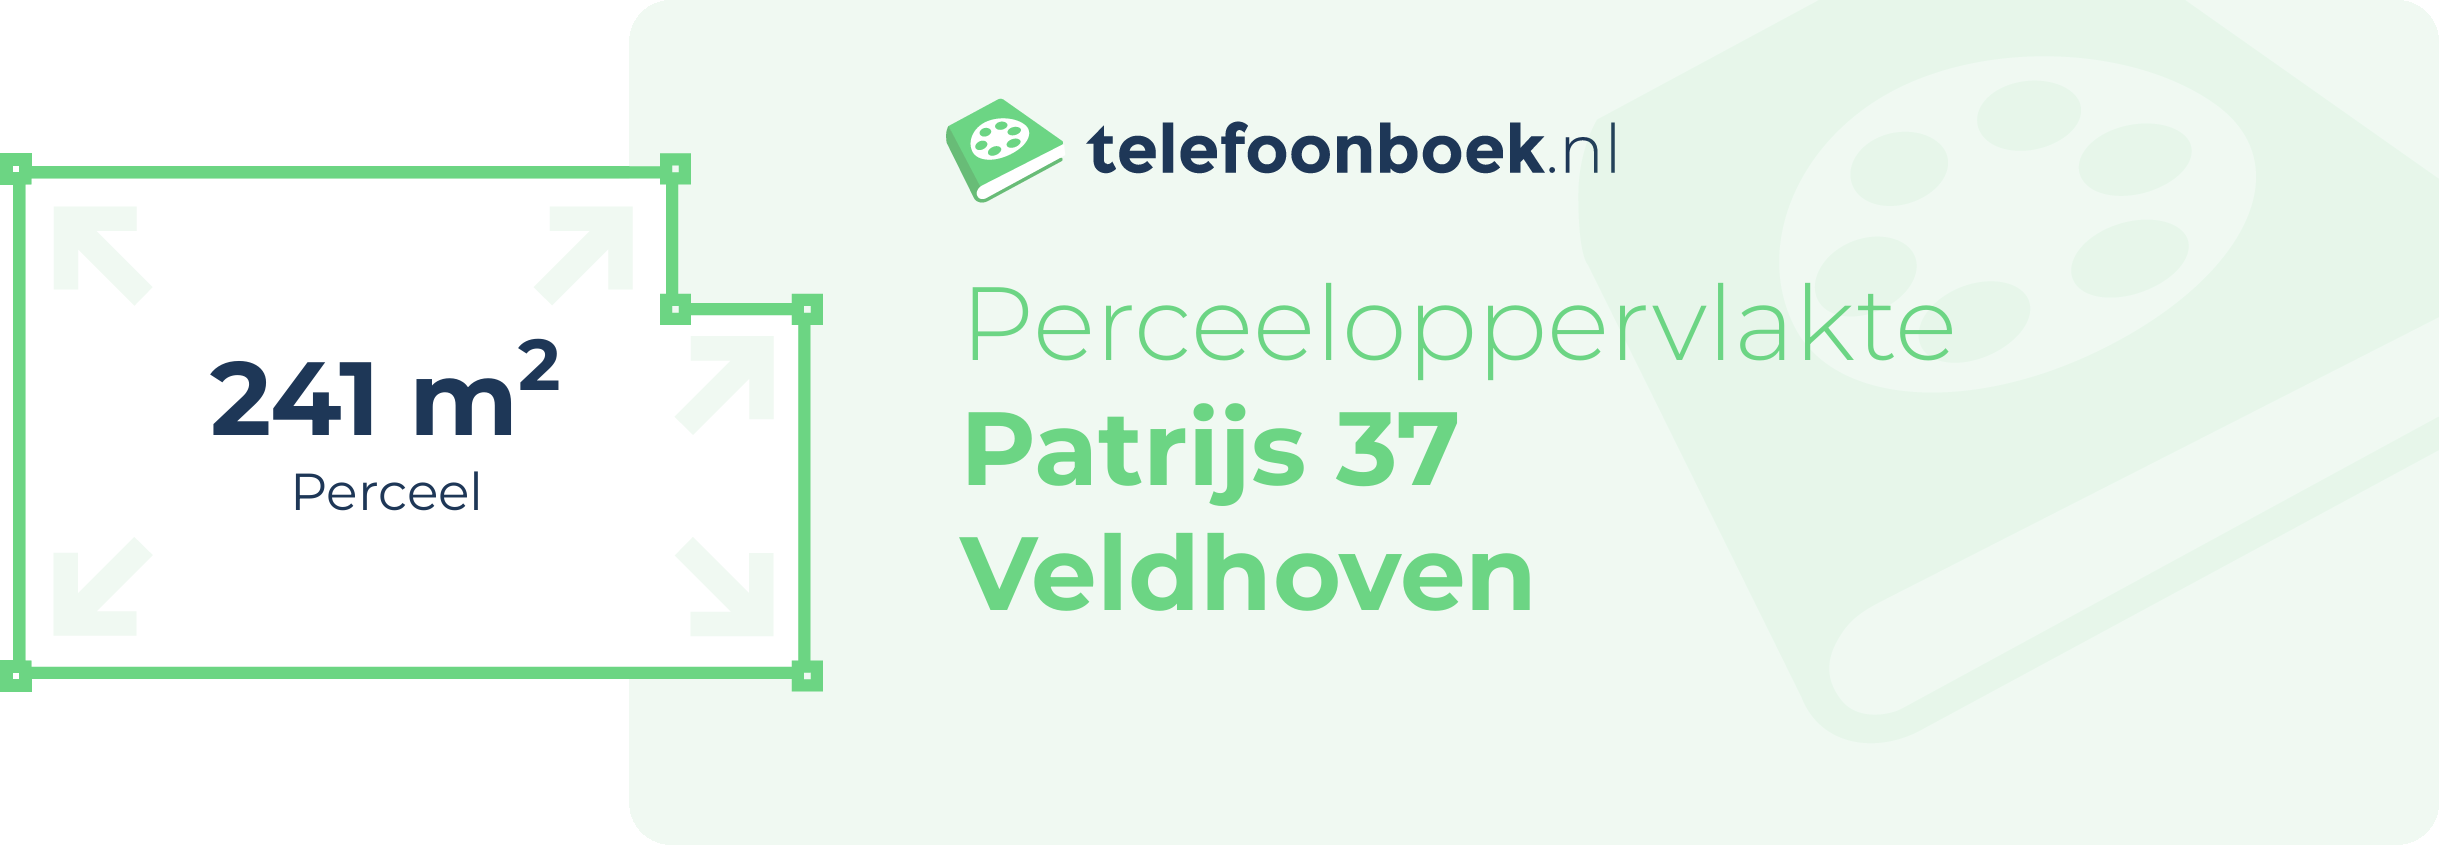 Perceeloppervlakte Patrijs 37 Veldhoven